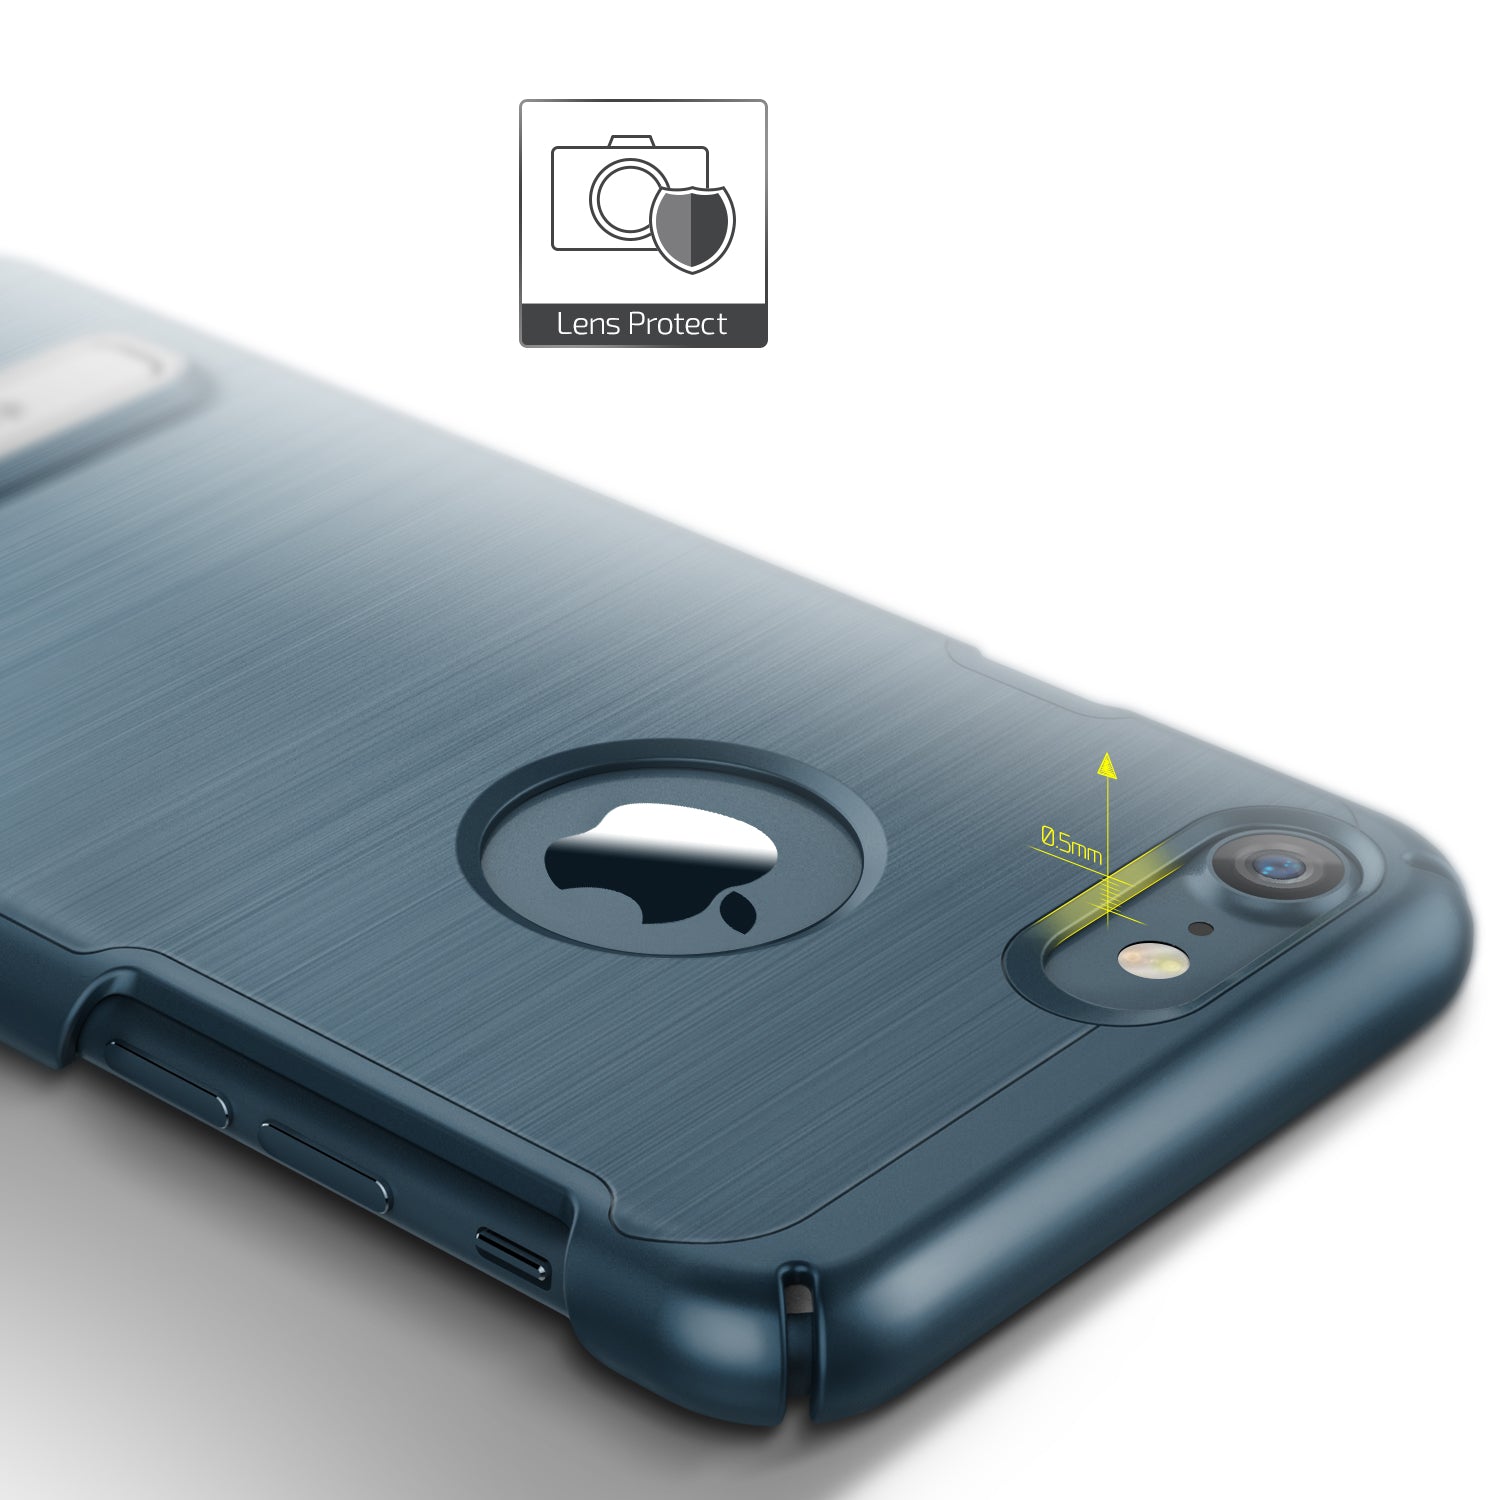 Simpli Lite Series Original From VRS Design Slim Case For iPhone 7 Plus Blue